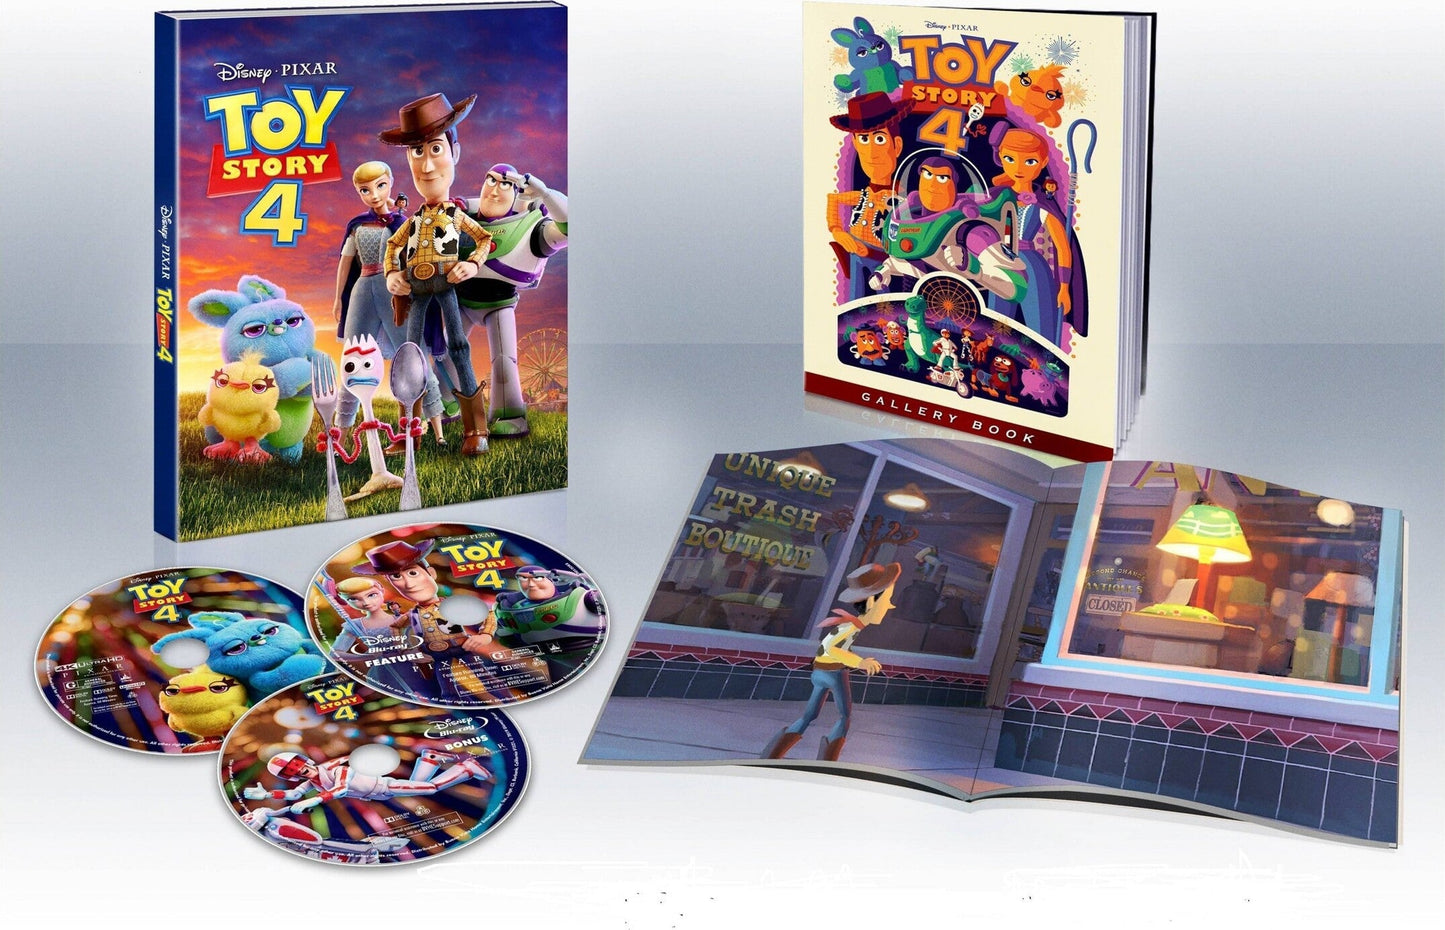 История игрушек 4 (англ. язык) (4K UHD + Blu-ray) Коллекционное издание